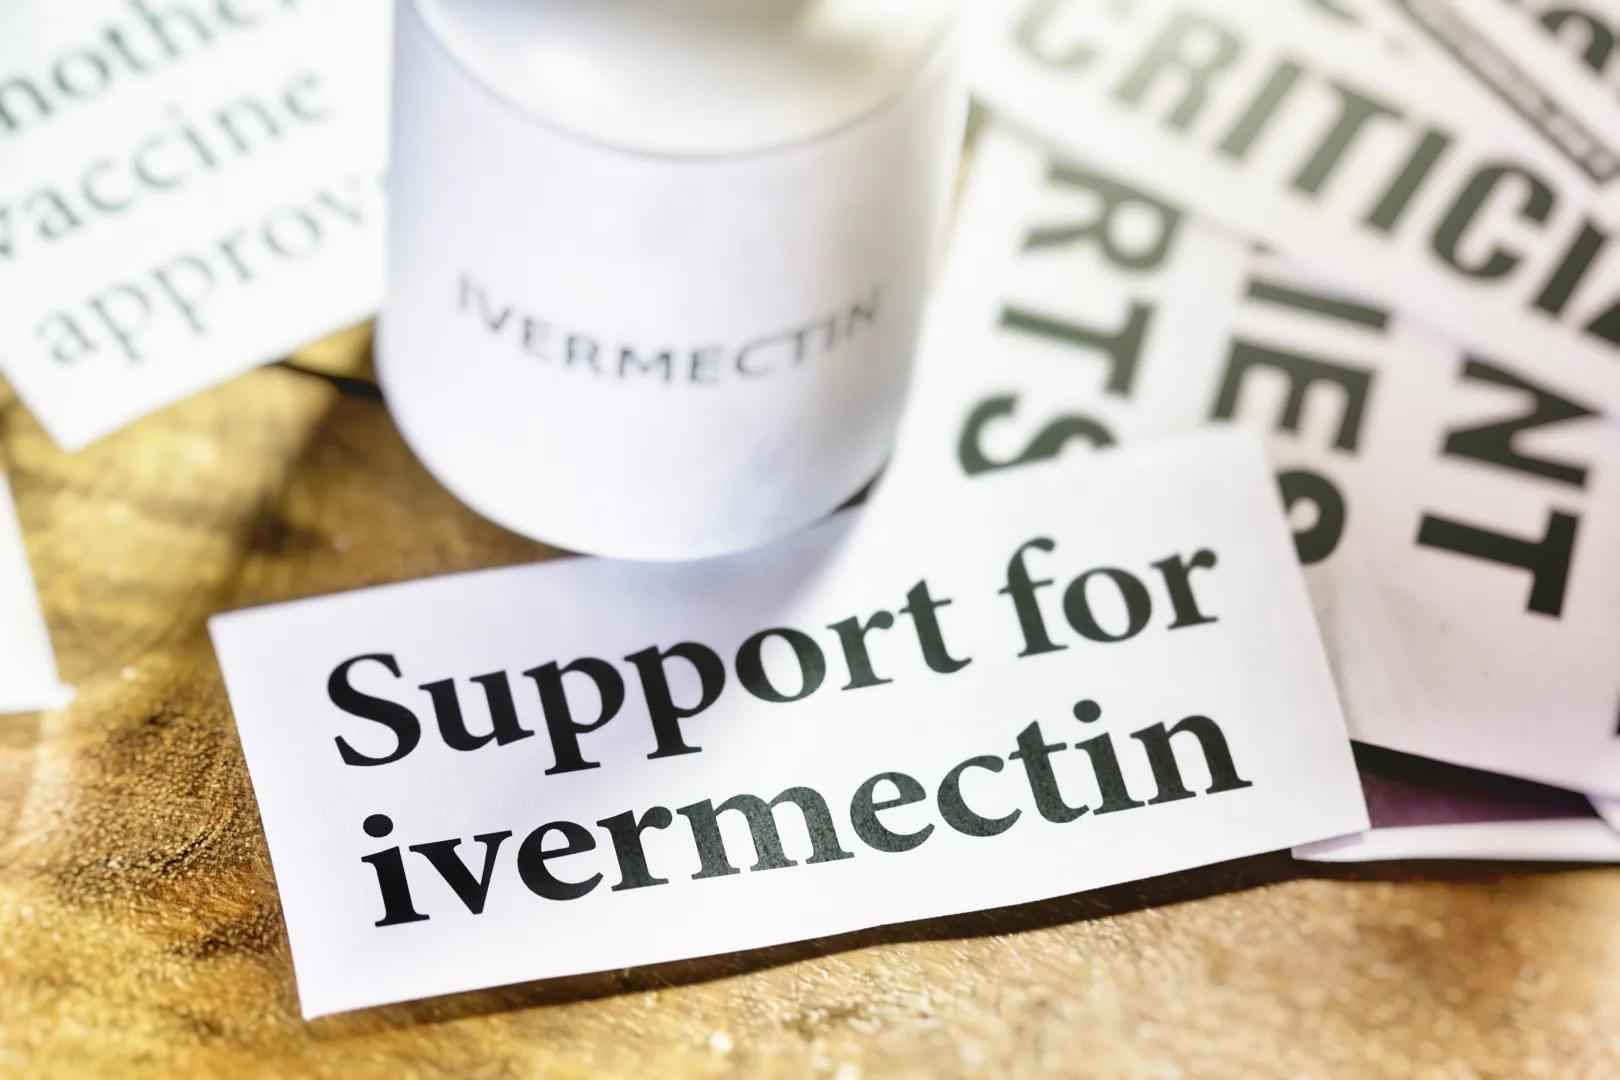 Os principais aliados da mídia abandonam o FDA em meio a uma ação judicial por causa da ivermectina